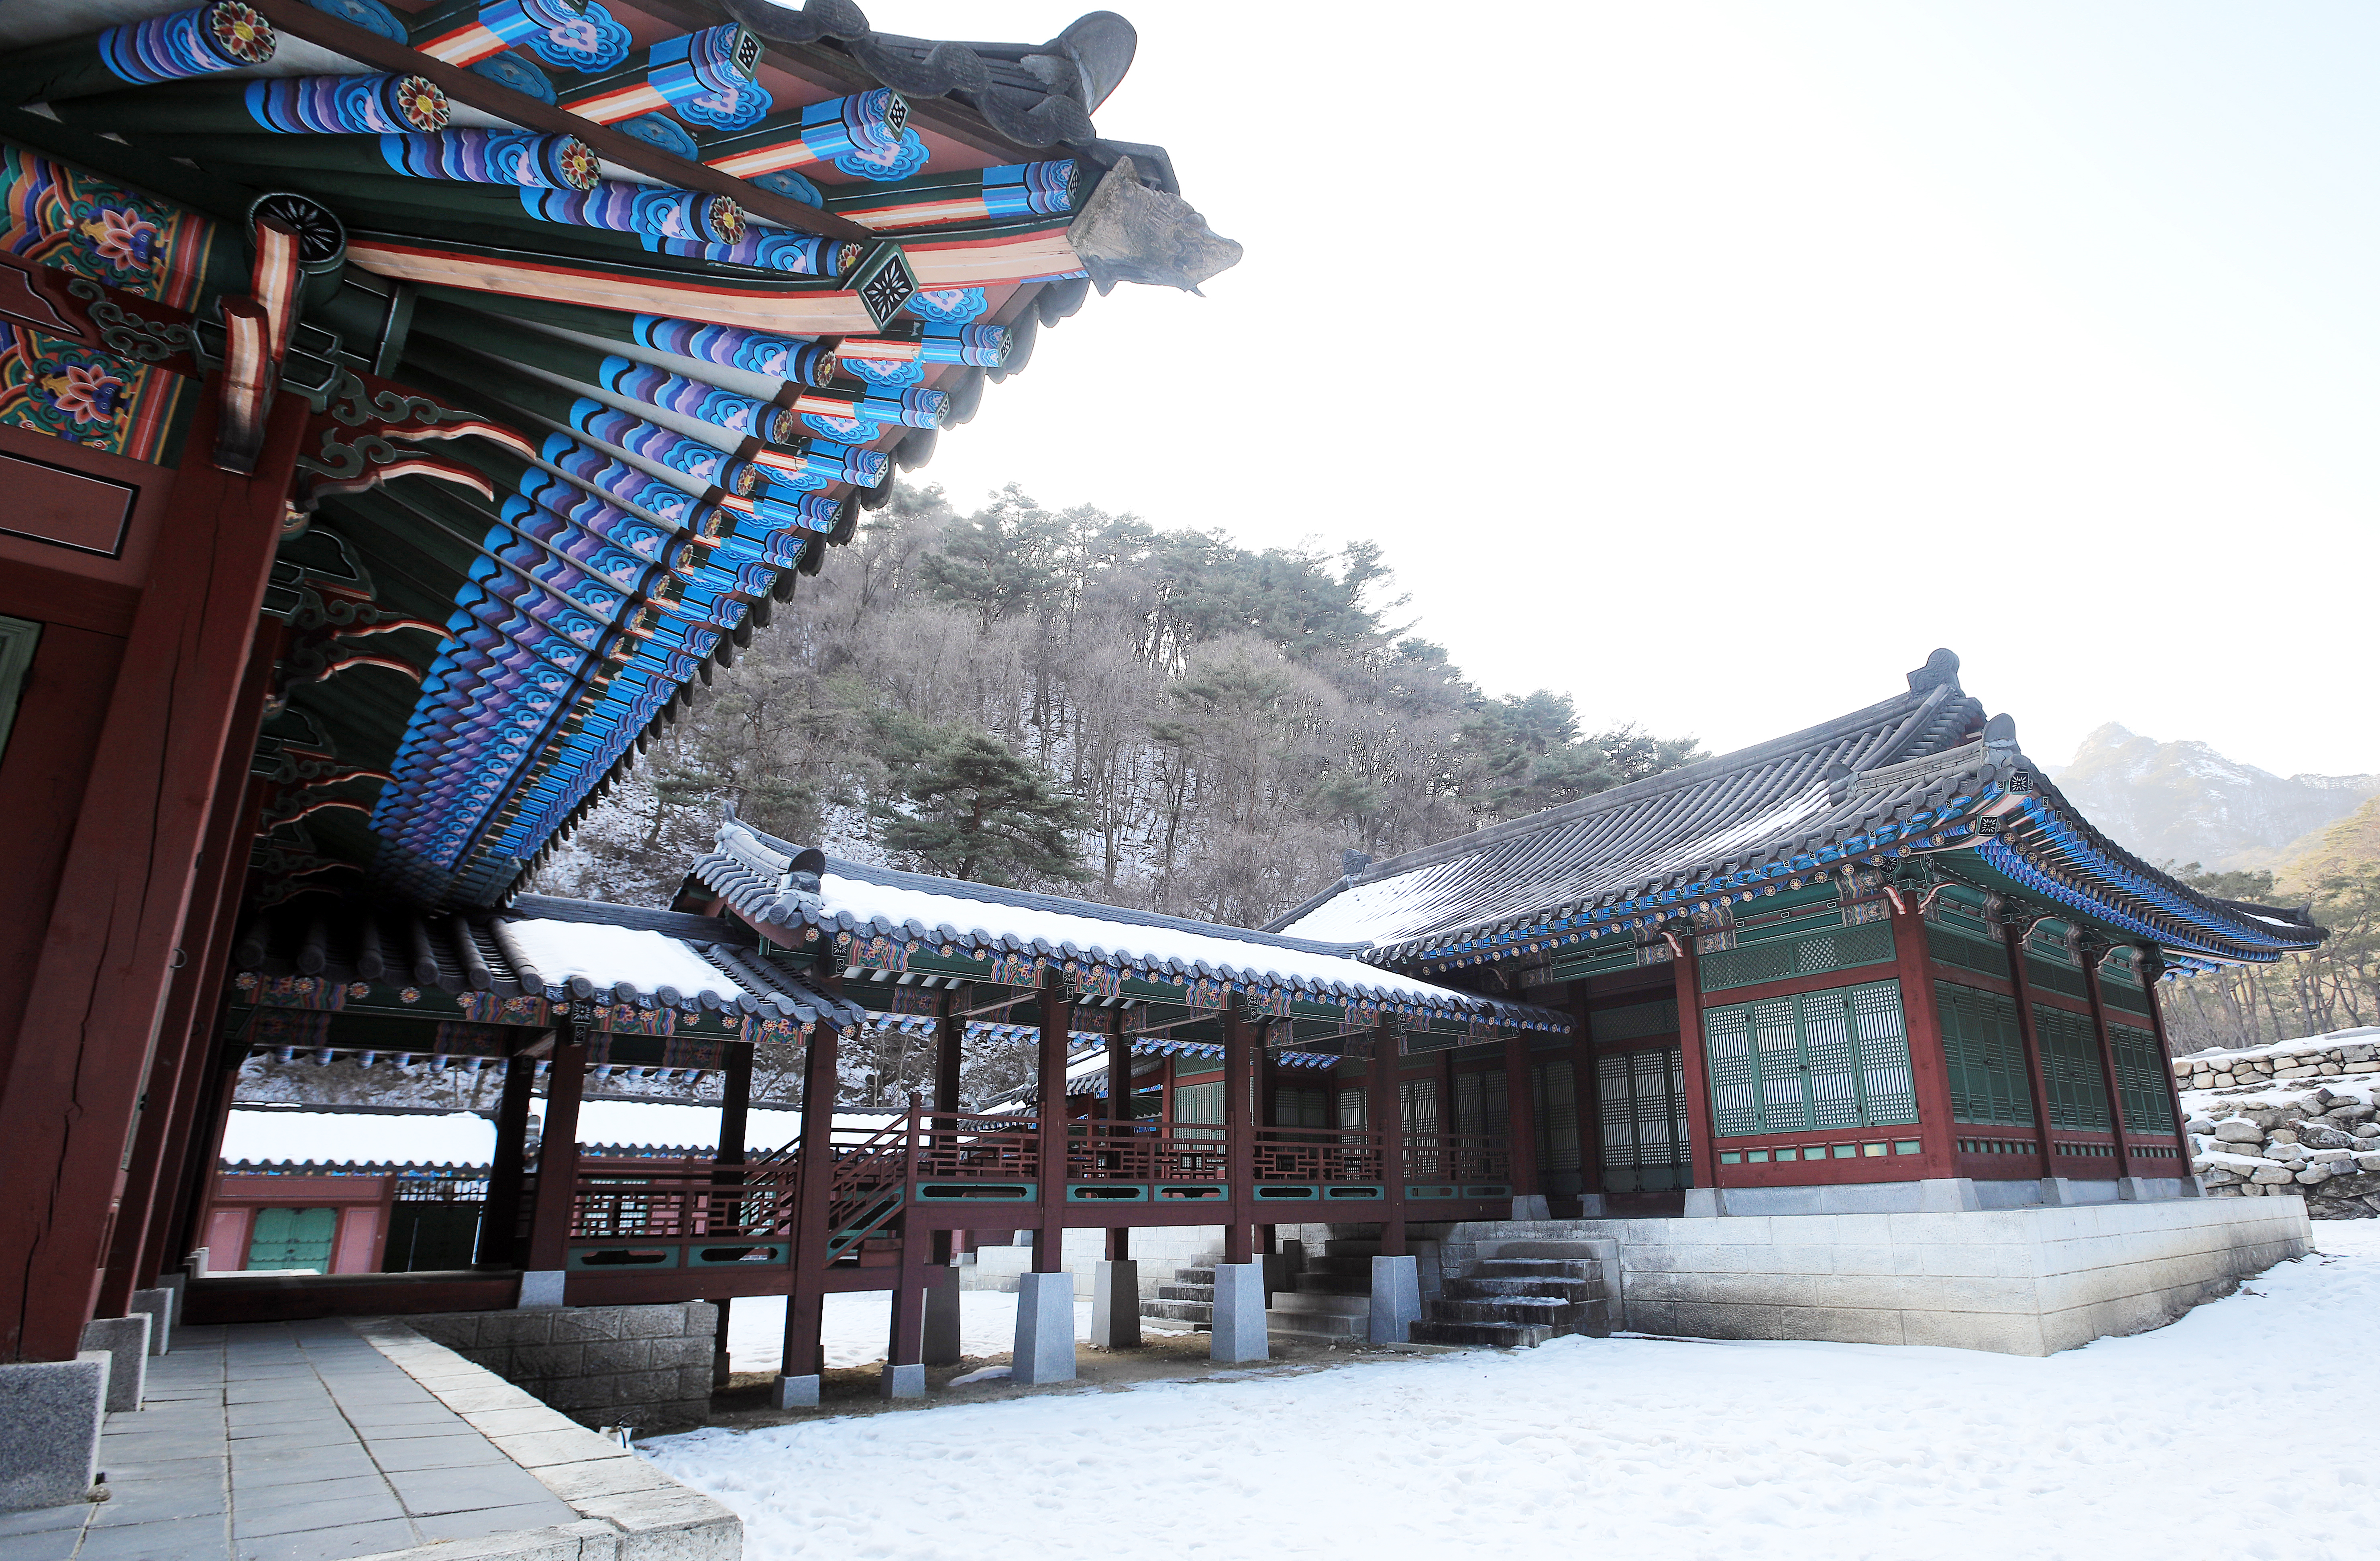 ‘옷소매 붉은 끝동’을 촬영한 경북 문경 오픈세트장 백제궁. 한국관광공사 제공